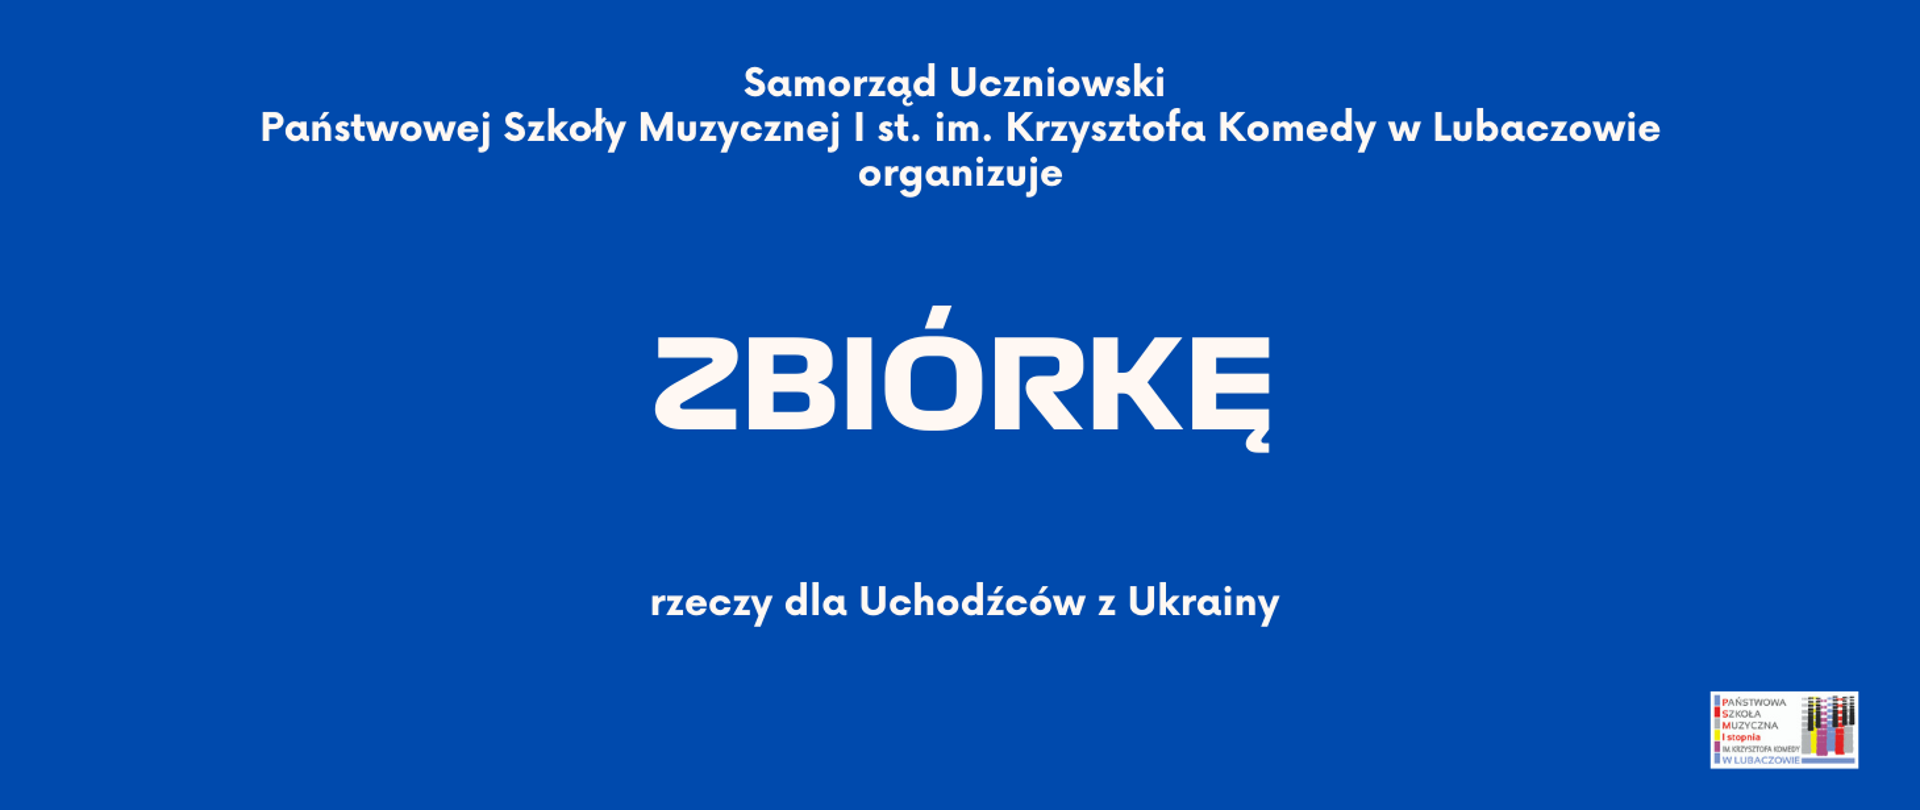 Niebieska grafika z tekstem "Zbiórka rzeczy dla Uchodźców z Ukrainy"